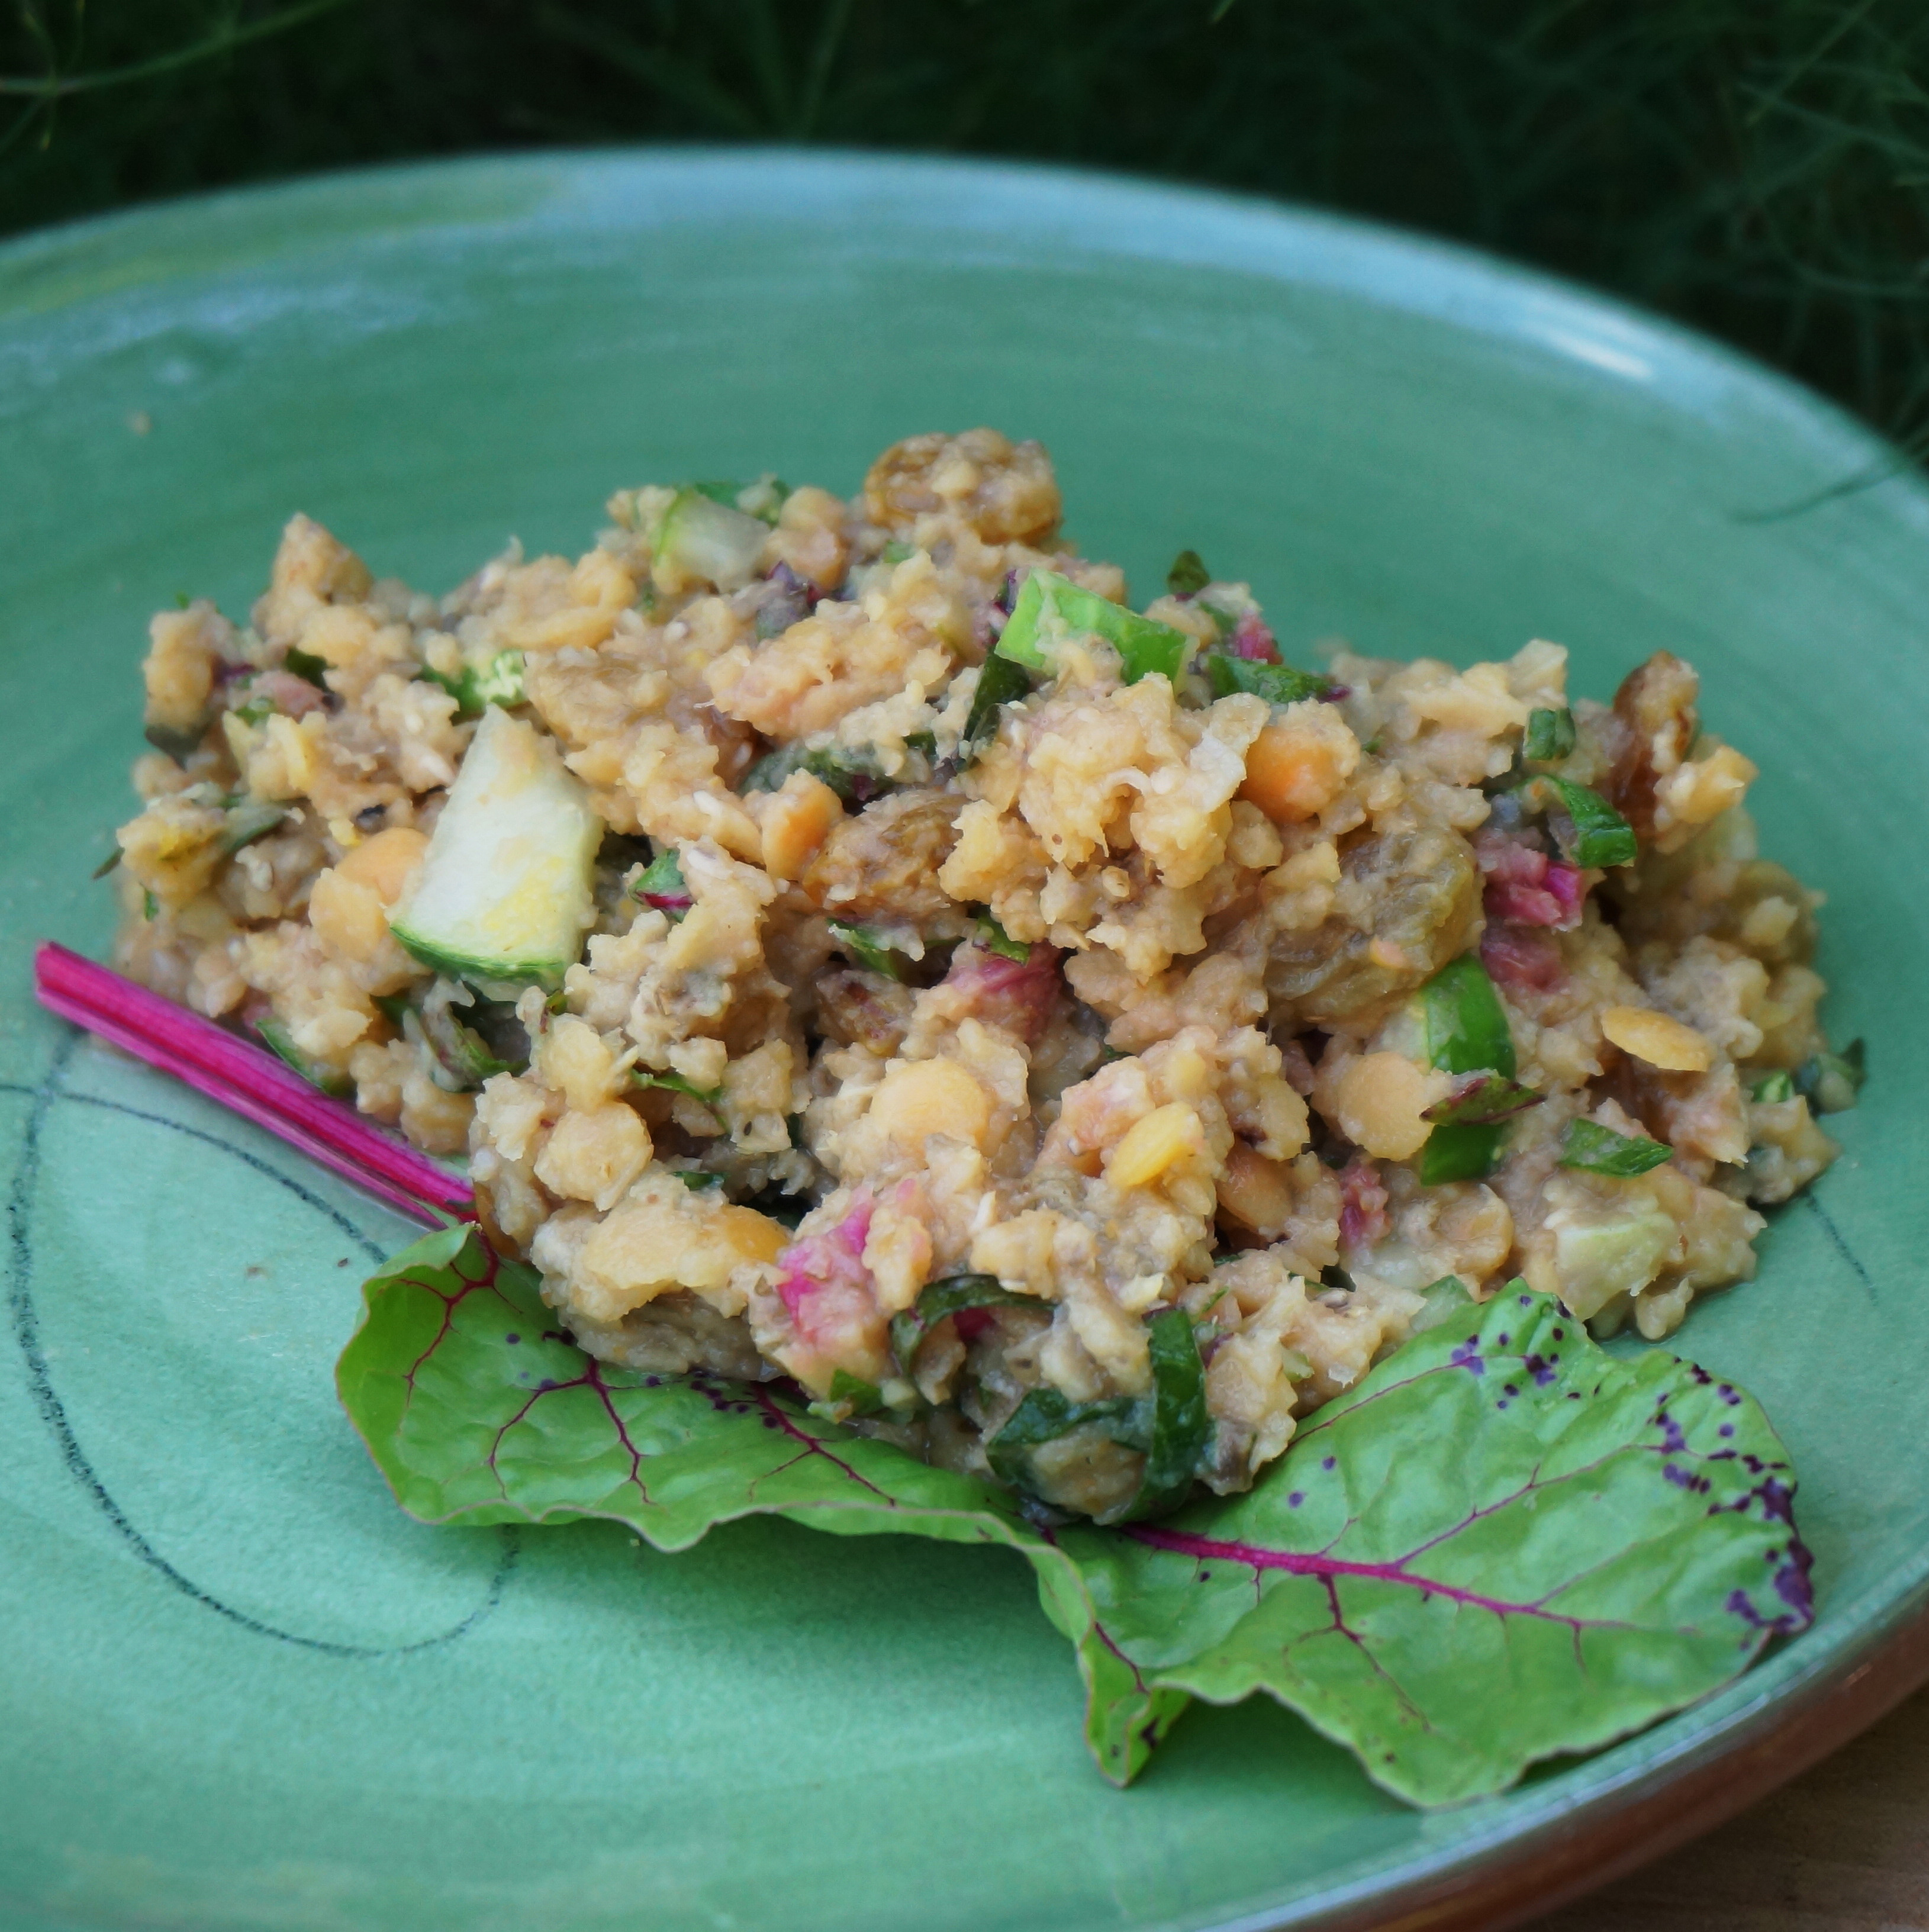 Summer Lentil Recipes
 A Recipe for Lentil Summer Salad